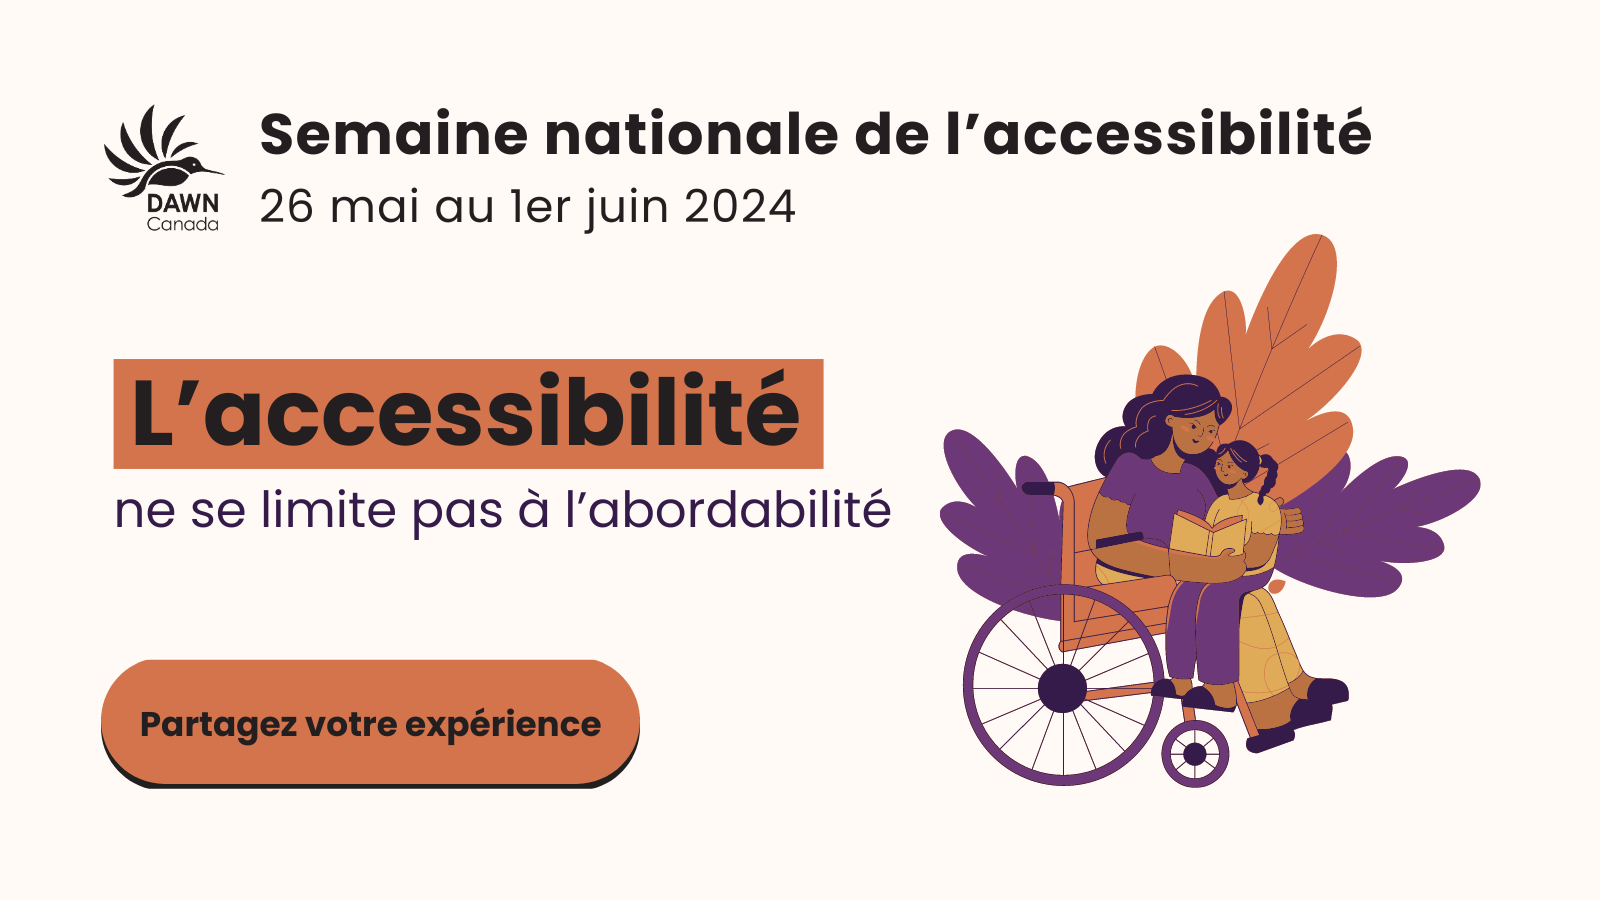 Graphique textuel pour la semaine nationale de l'accessibilité avec le slogan "L'accessibilité ne se limite pas à l'abordabilité"